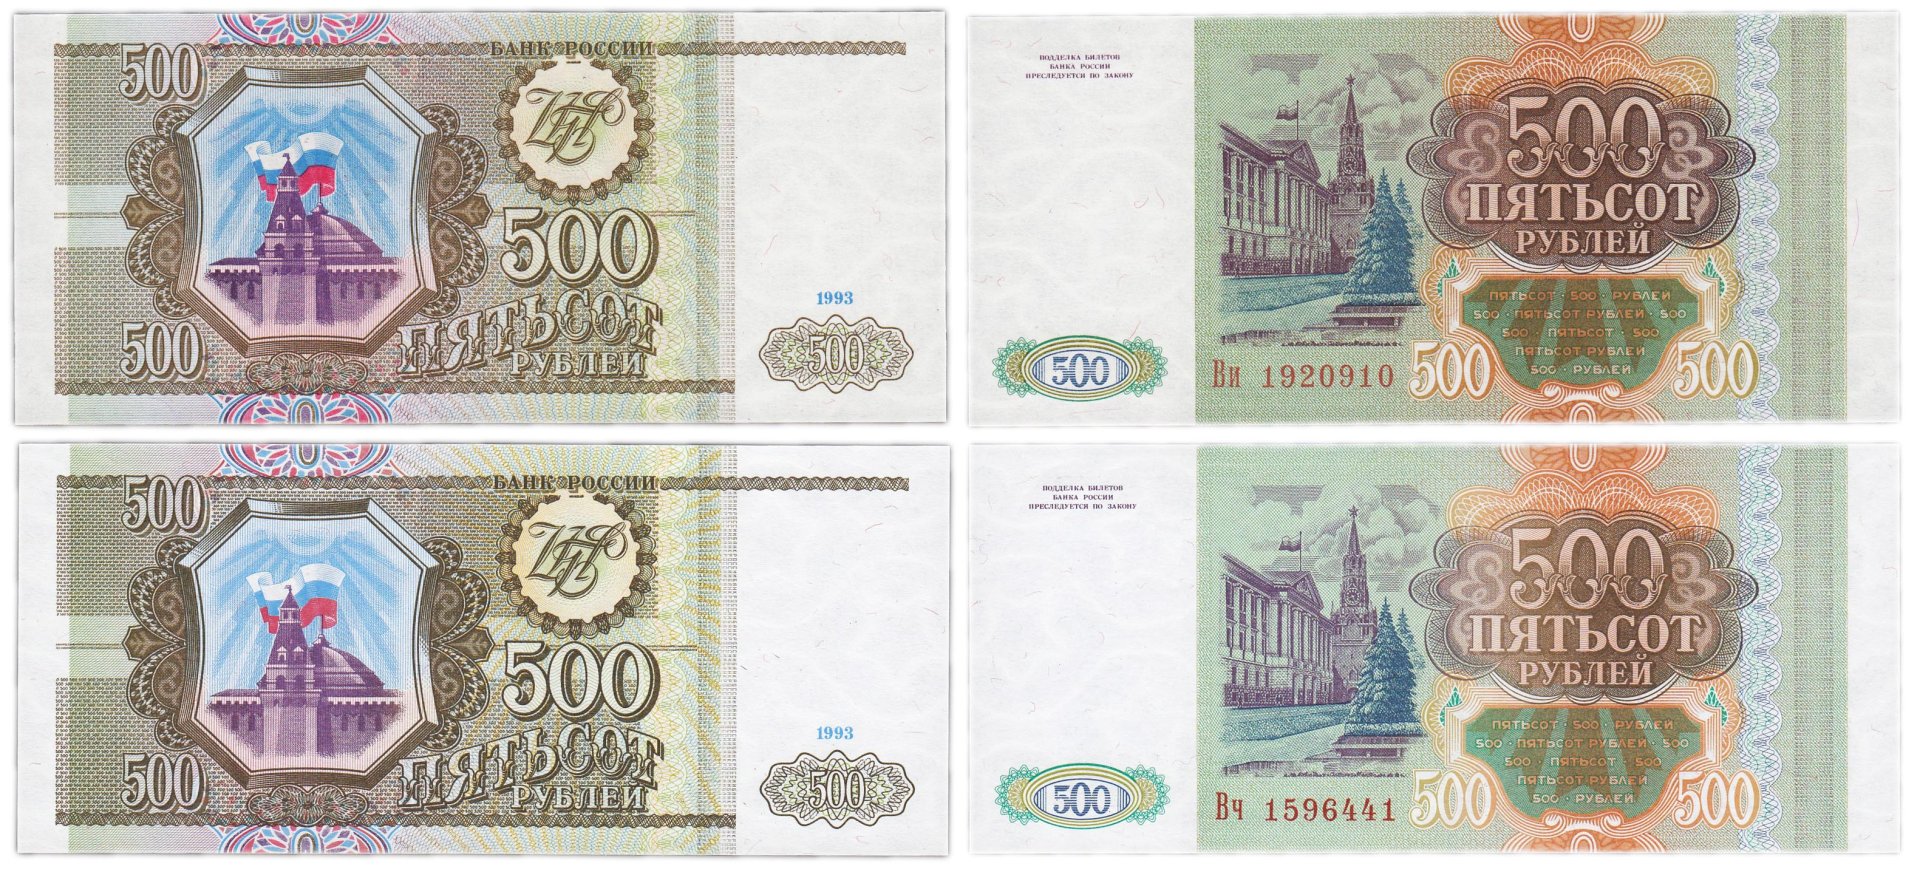 17 500 в рублях. 500 Тысяч рублей 1993. Пятьсот рублей 1993 года. 500 Рублей 1993 года бумажные. 100 И 500 рублей 1993 года бумажные.